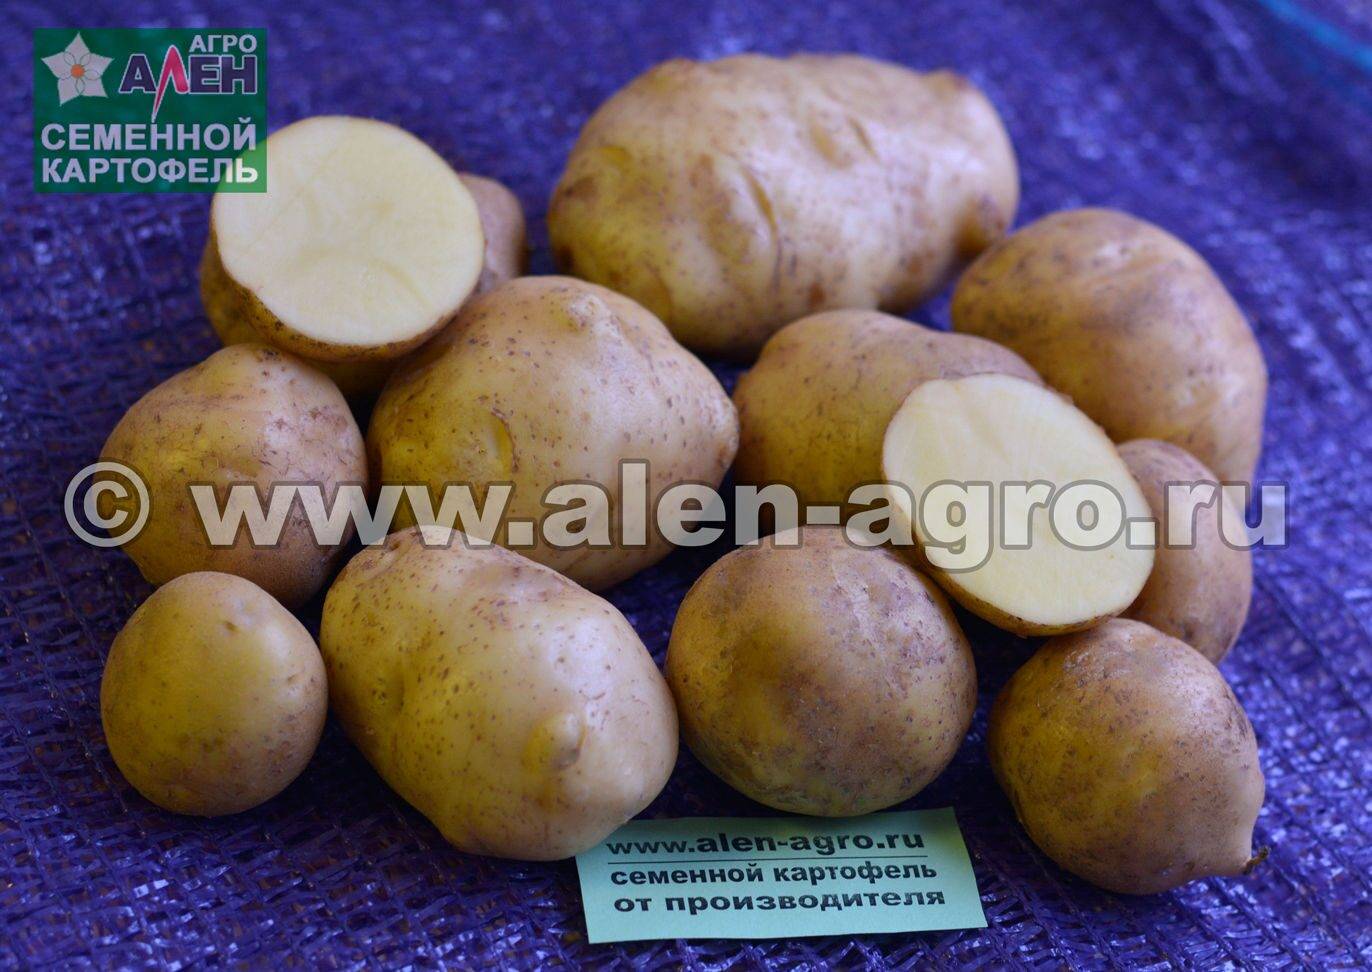 Описание и характеристика картофеля сорта колобок, посадка и уход